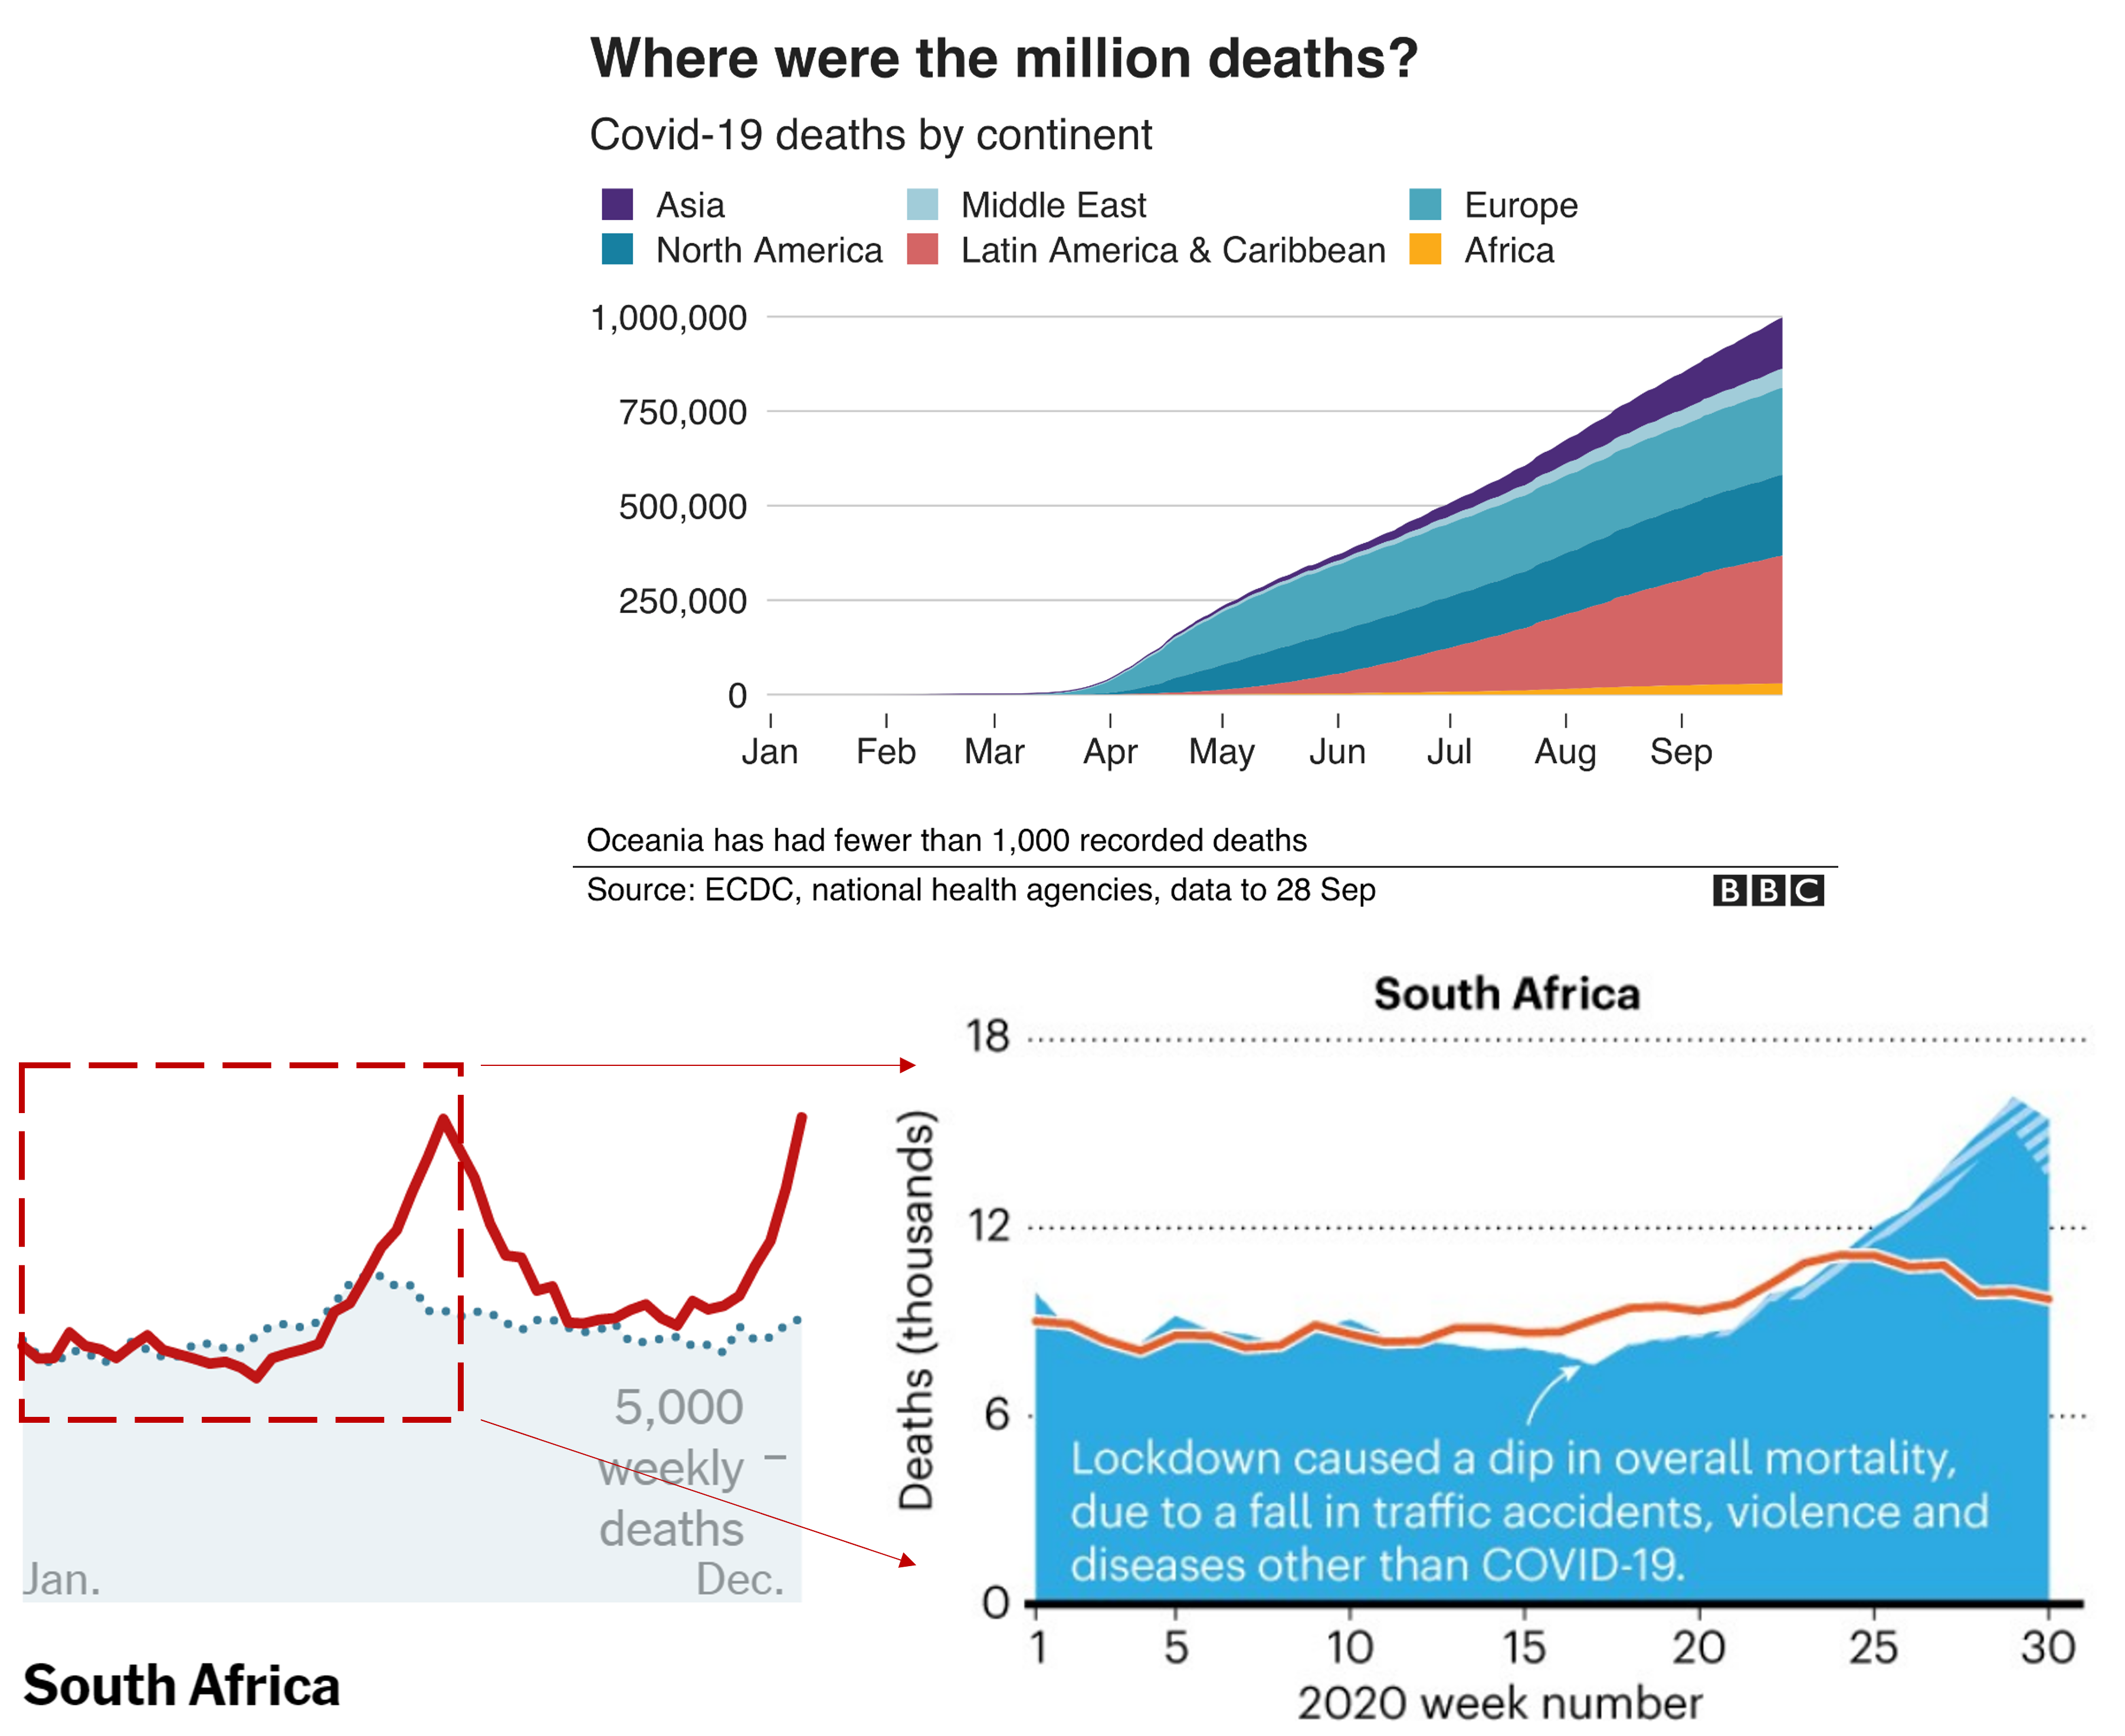 En la sección superior se ilustra el número de muertos por covid reportados por continente, para el periodo en el que se alcanzó el primer millón de muertos -Sep 2020-. En la sección inferior se ilsutra el número de excesos de muertes (desviación del número de muertos del 2020 frente al promedio de años anteriores) en Sudáfrica. Este panel reportó un valor atípico, el número de excesos de muertes durante la cuarentena fue inferior, es decir el número de decesos para el 2020 disminuyó. Probablemente la cuarentena previnó las muertes asociadas con accidentes de tráfico entre otros factores. Imagén tomada y modificada de @Wu_McCann_Katz_Peltier_Singh_2020 y @Viglione_2020